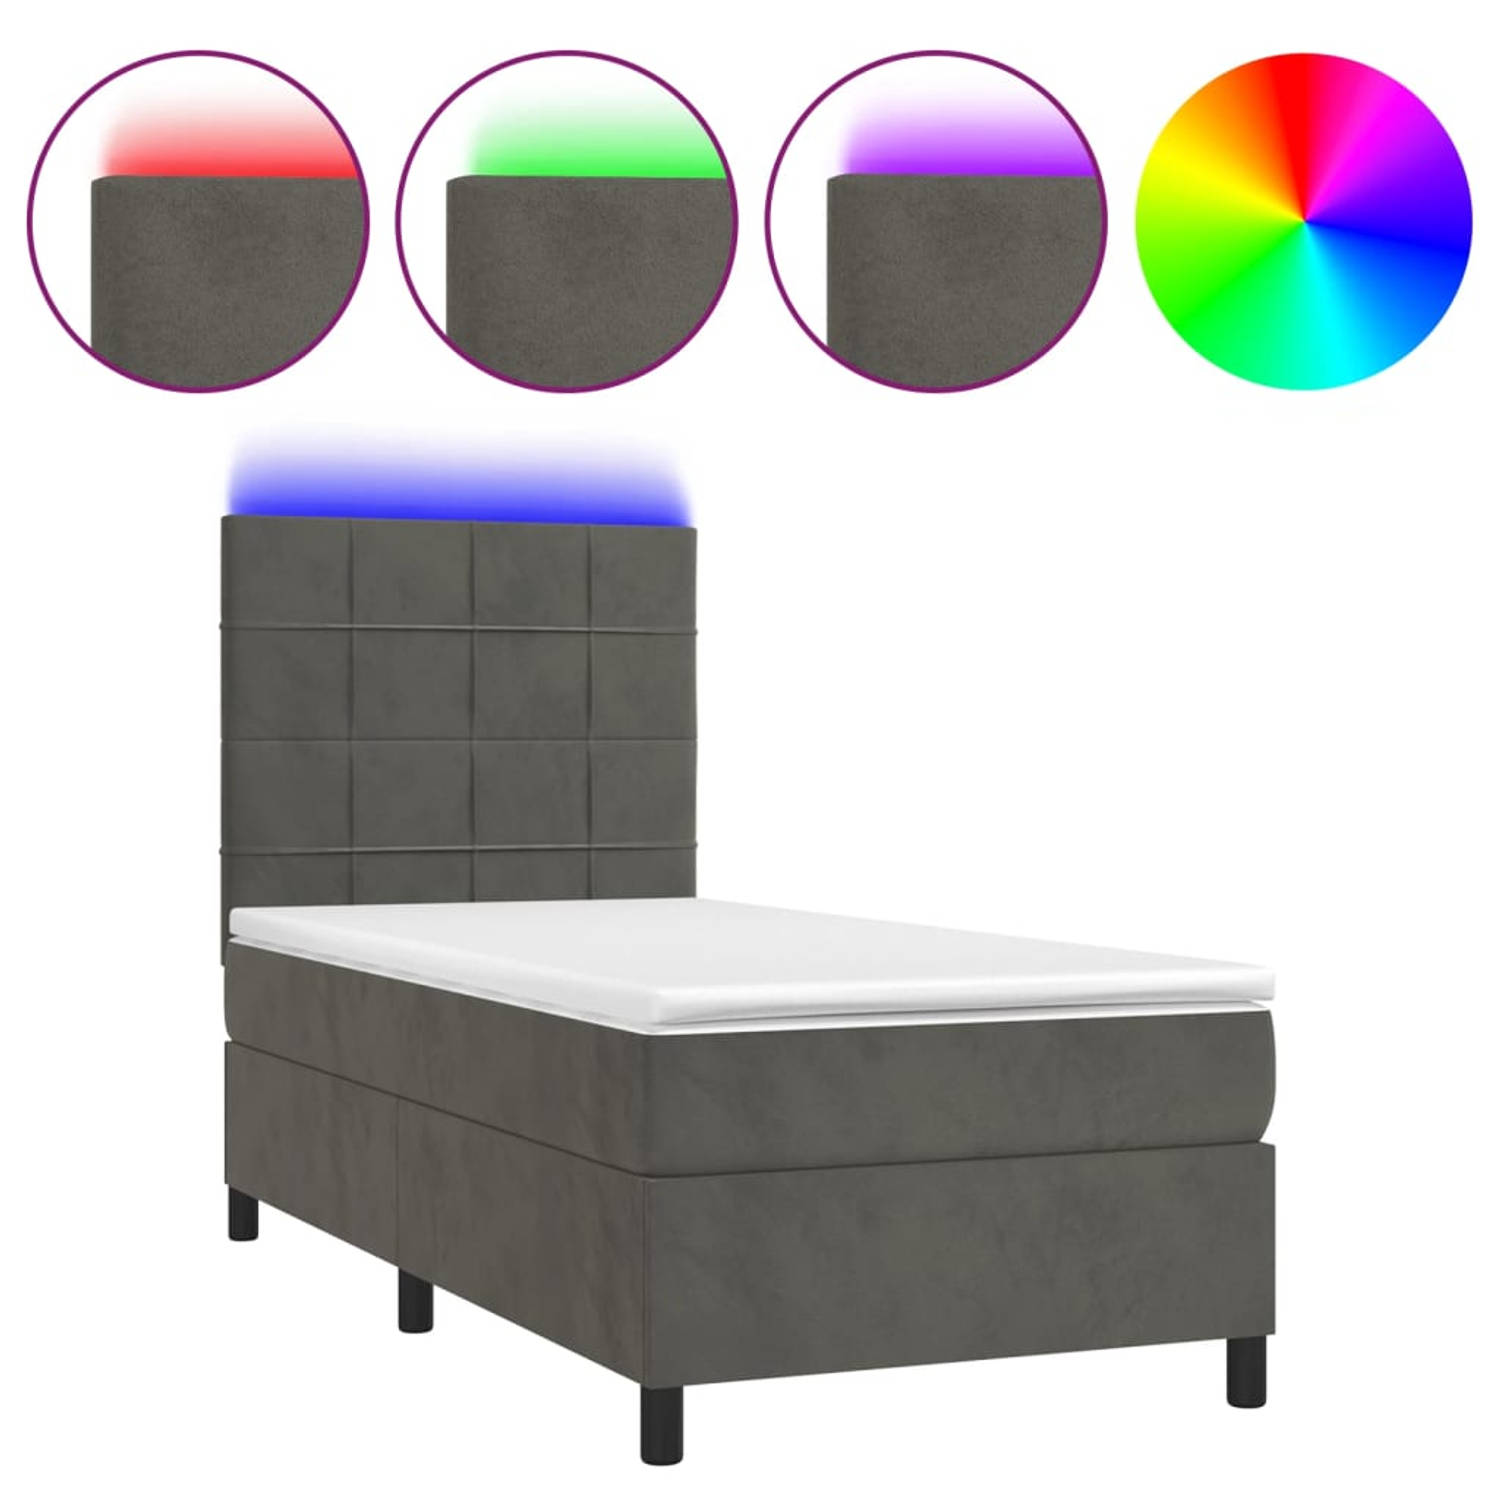 The Living Store Bed Frame - Donkergrijs Fluweel - 203x90x118/128 cm - Verstelbaar hoofdbord - Kleurrijke LED-verlichting - Pocketvering matras - Huidvriendelijk topmatras - Inclus